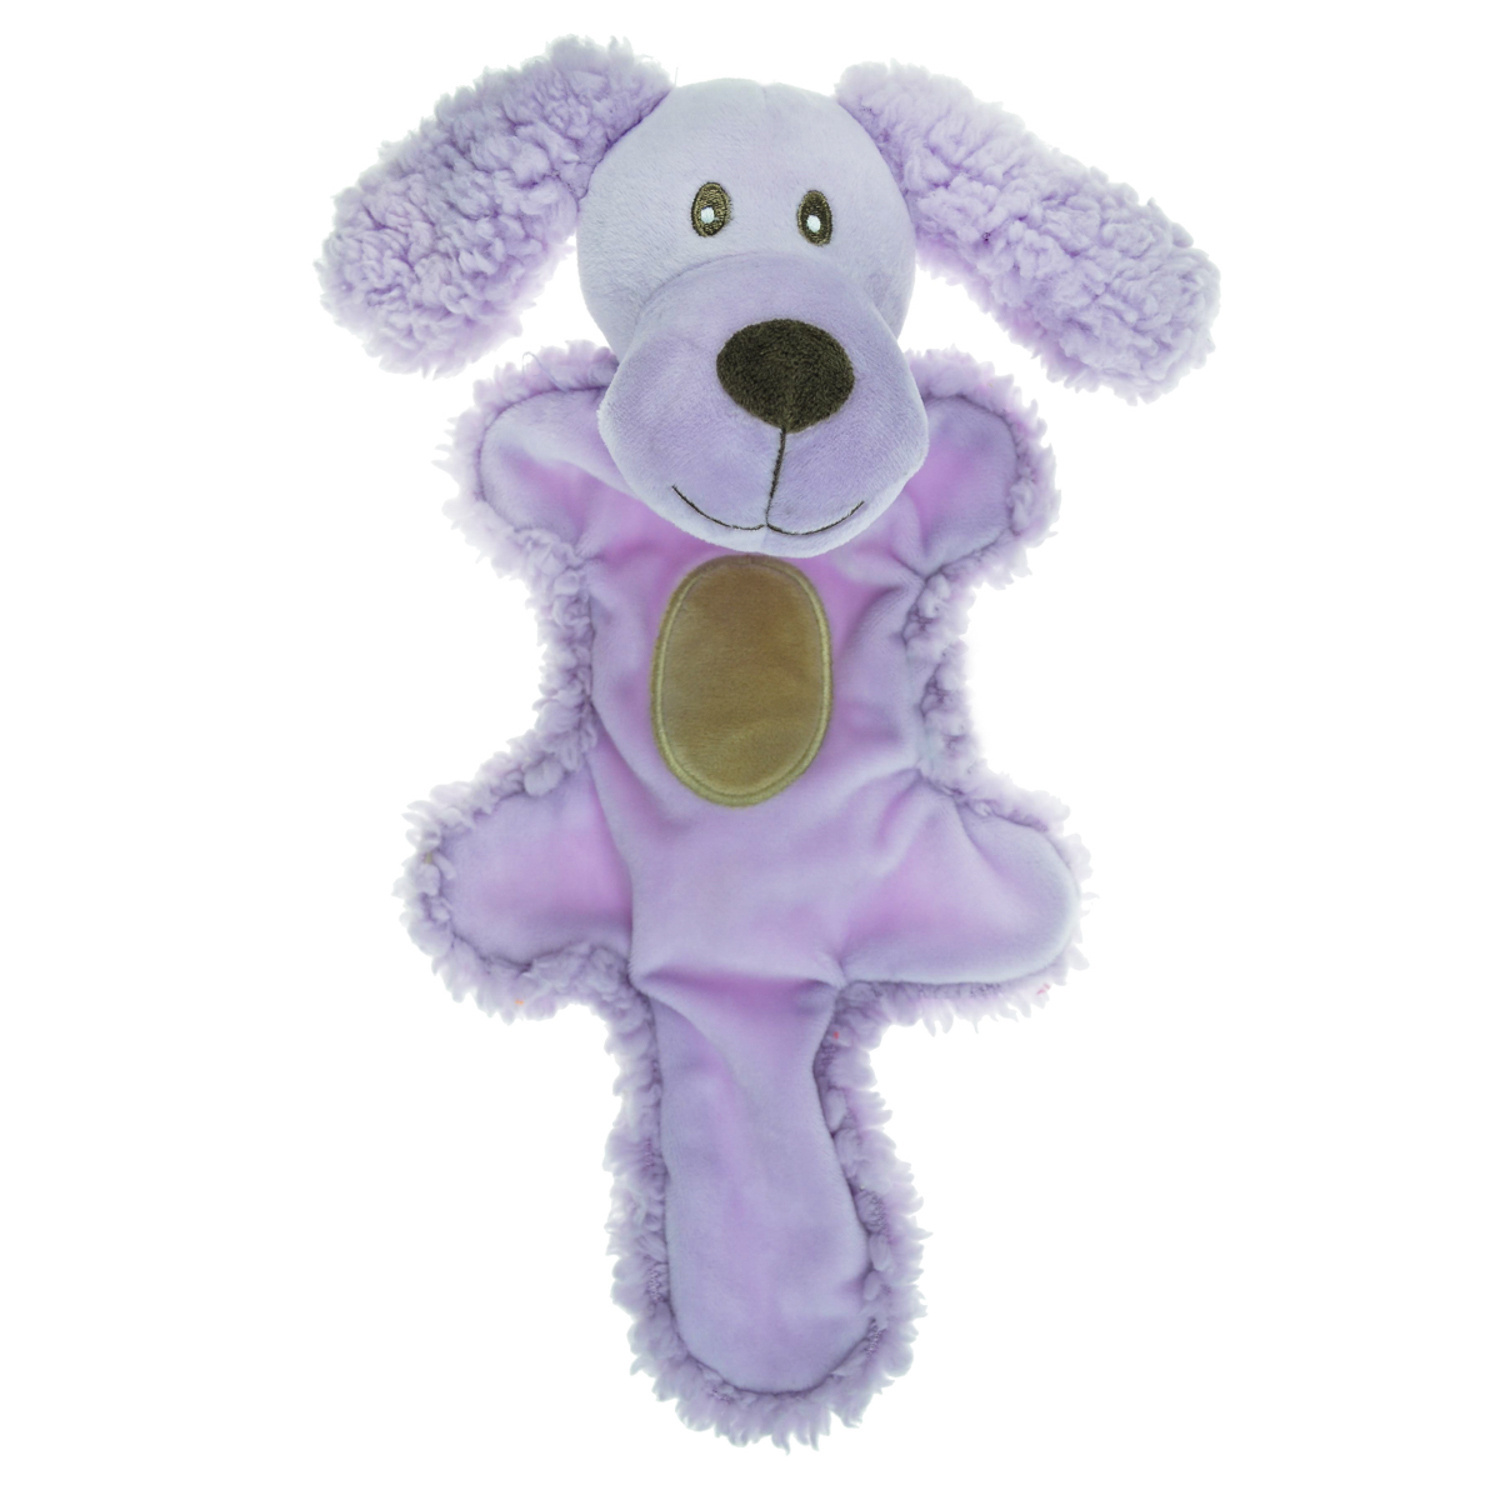 Aromadog Aromadog игрушка для собак, собачка с хвостом, сиреневая (70 г) aromadog игрушка petpark для собак плетенка с двумя теннисными мячами wb19412 0 222 кг 58720